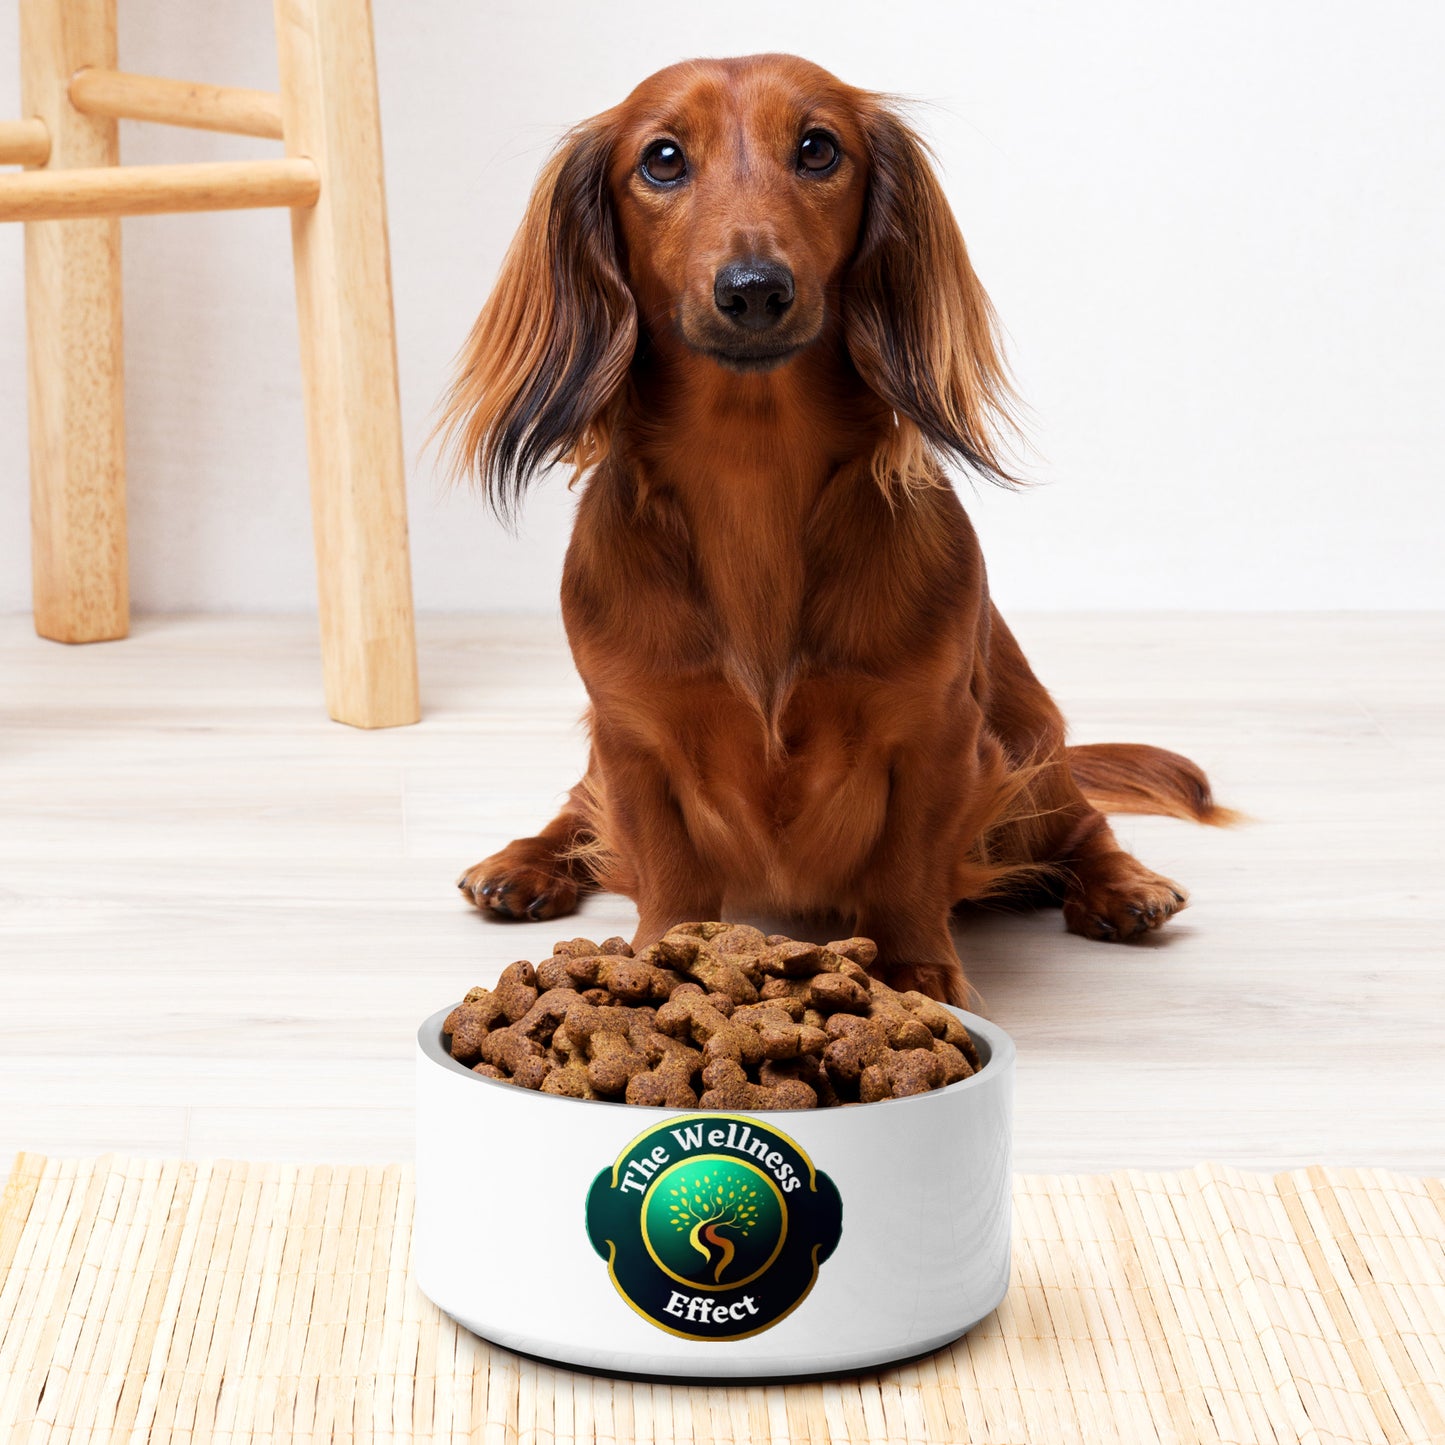 The Wellness Effect Pet bowl